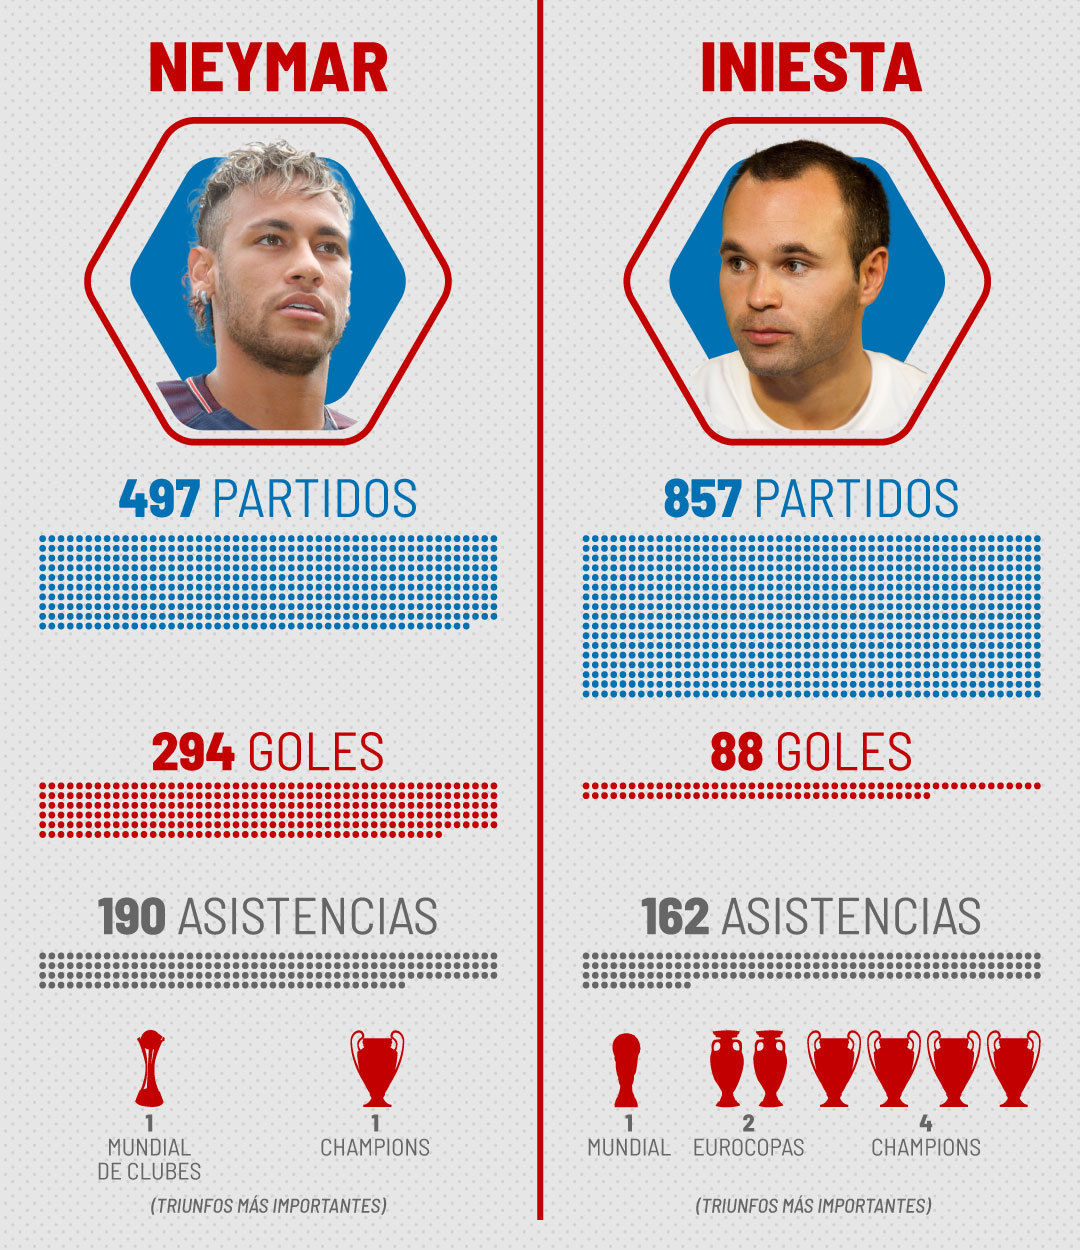 Si no es Neymar... ¿quién puede ser considerado el tercer mejor jugador de la generación de Cristiano y Messi?